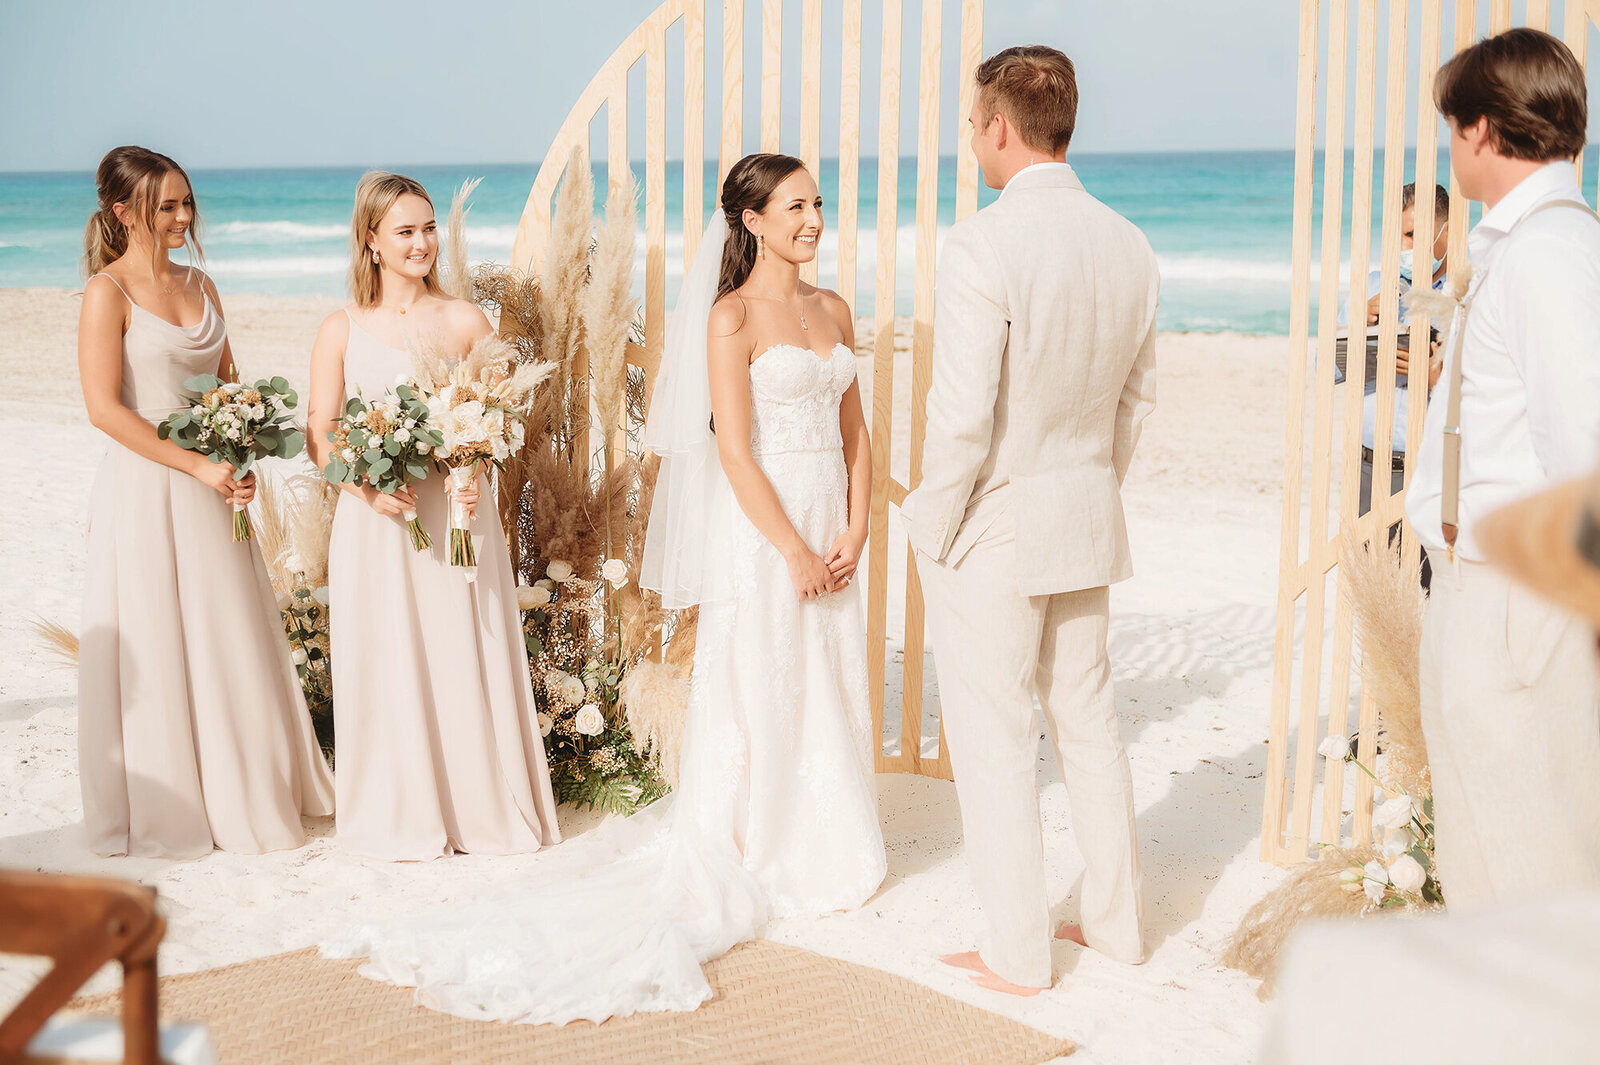 Destination Wedding at Live Aqua Resort in Cancun Mexico.